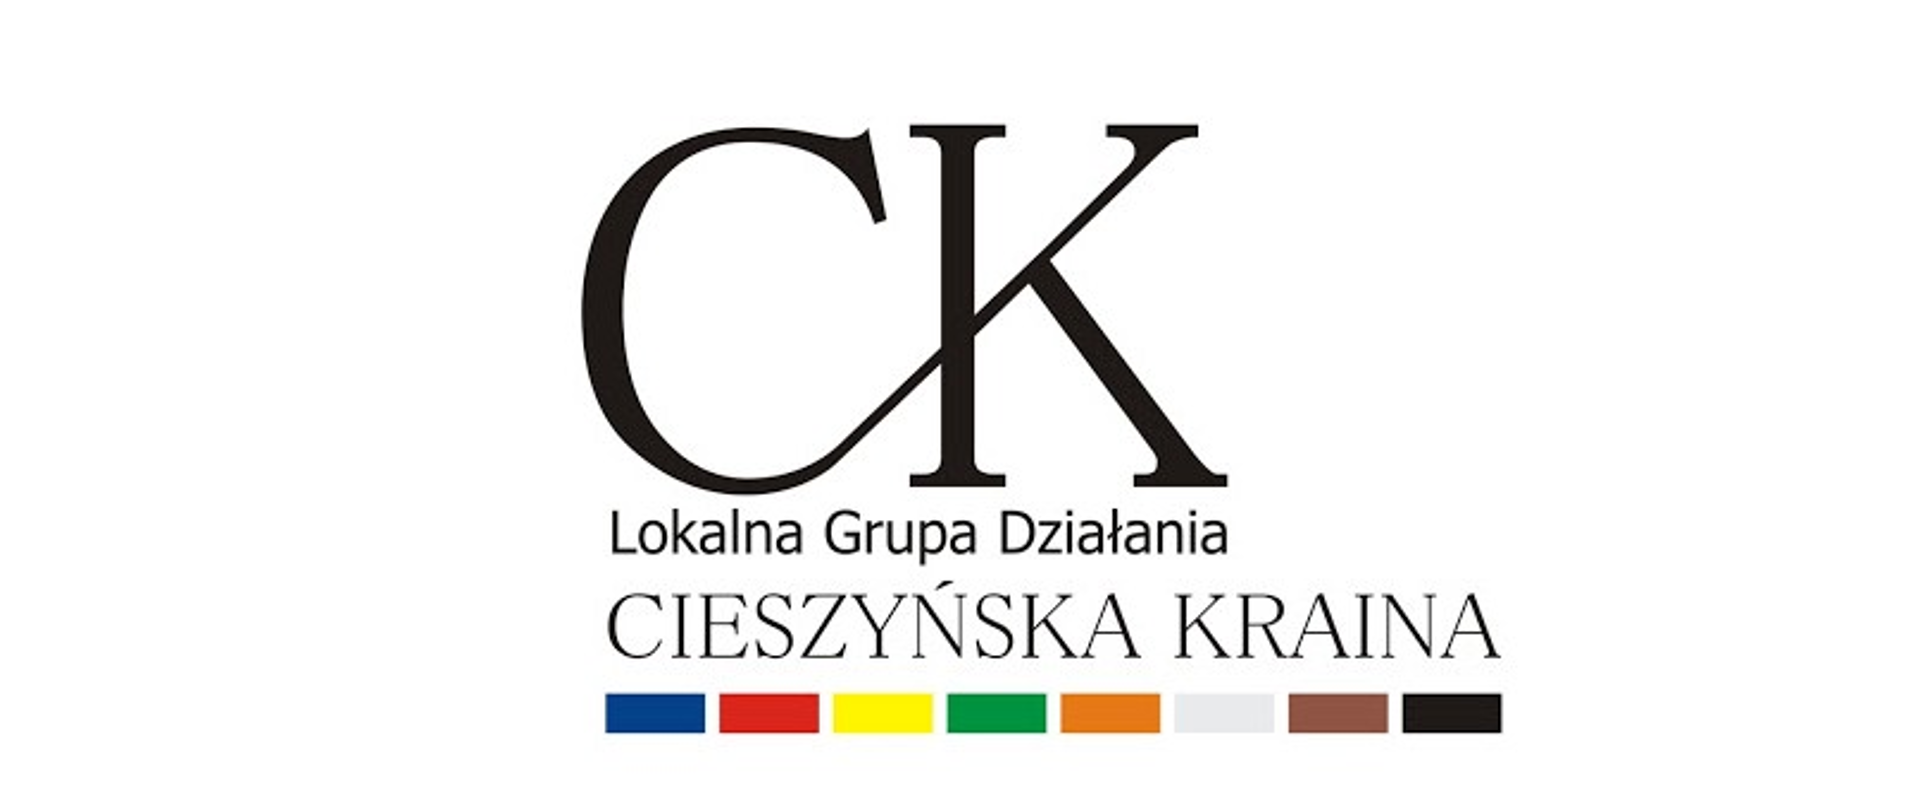 Duże litery CK
Napis: Lokalna Grupa Działania Cieszyńska Kraina
